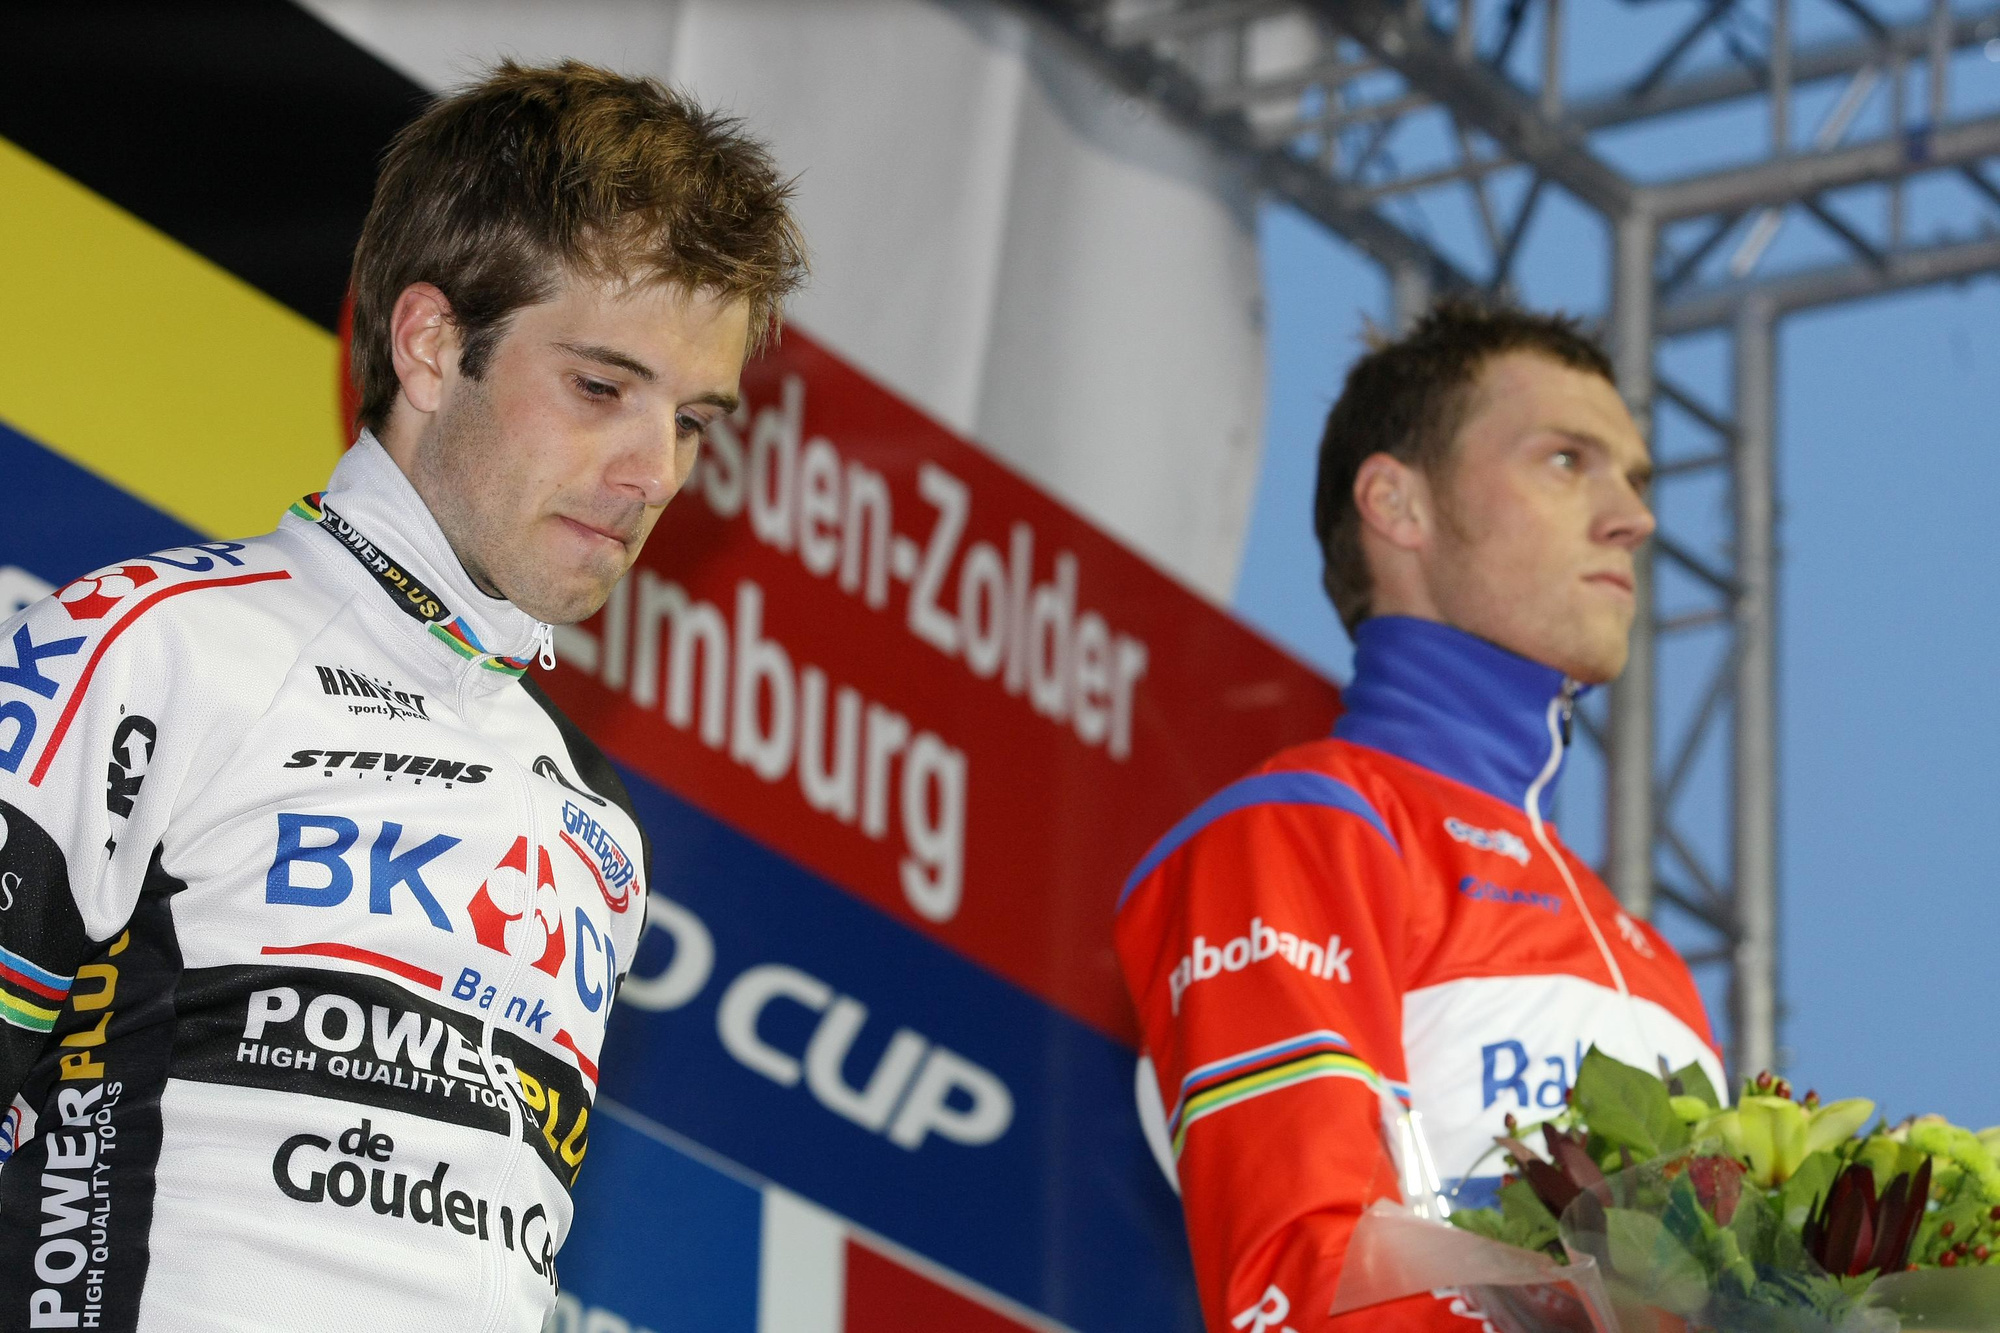 Niels Albert et Lars Boom étaient les seuls coureurs de labourés à avoir remporté le titre mondial aussi bien chez les juniors que chez les espoirs et les élites., belga